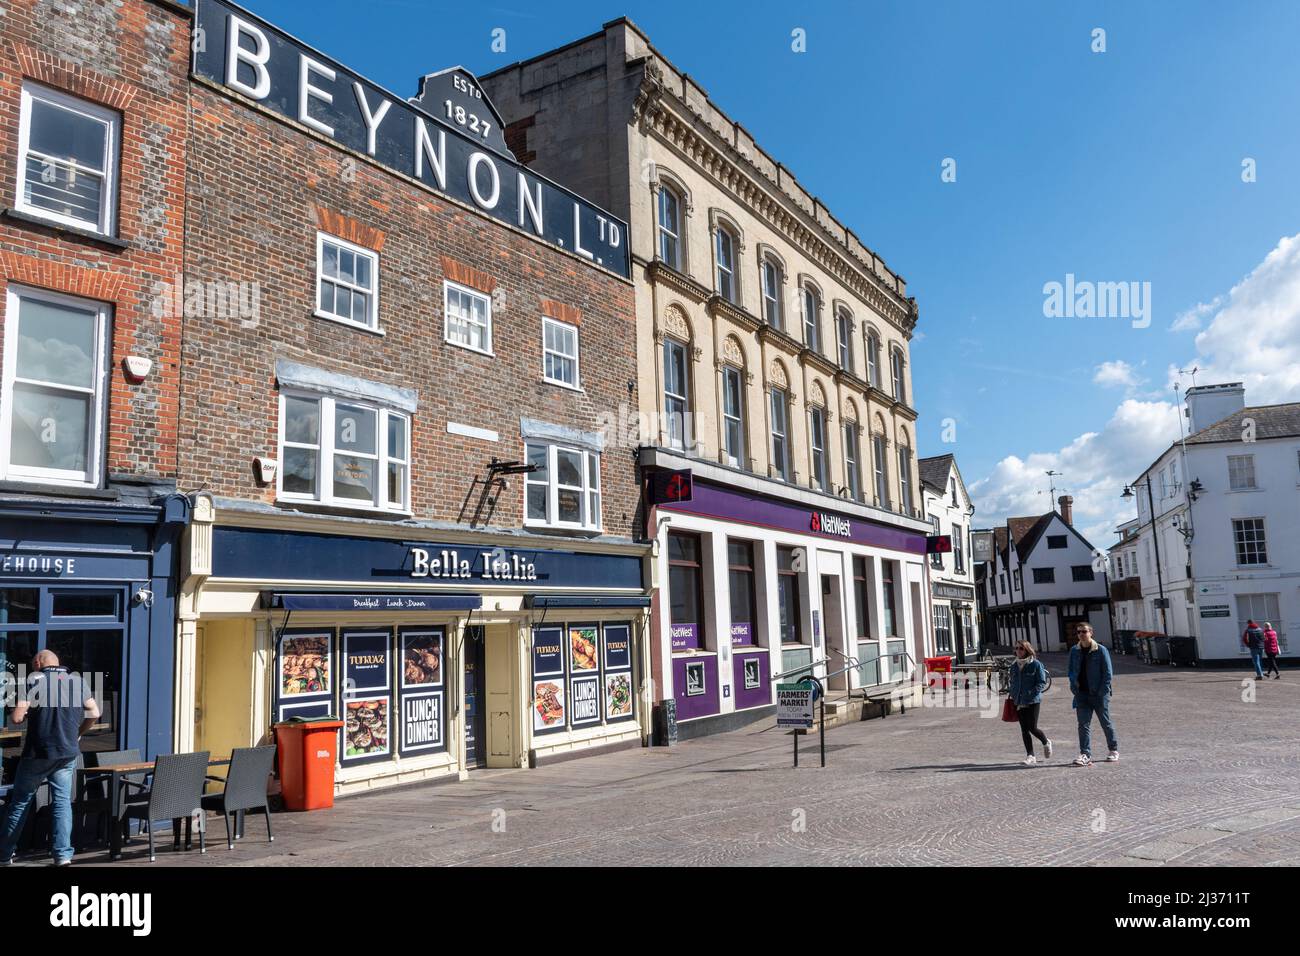 Historisches Gebäude von Beynon Ltd. In Newbury Market Place, Berkshire, England, Großbritannien, ehemaliger Draper-Laden, der 1827 gegründet wurde und heute ein italienisches Restaurant ist. Stockfoto